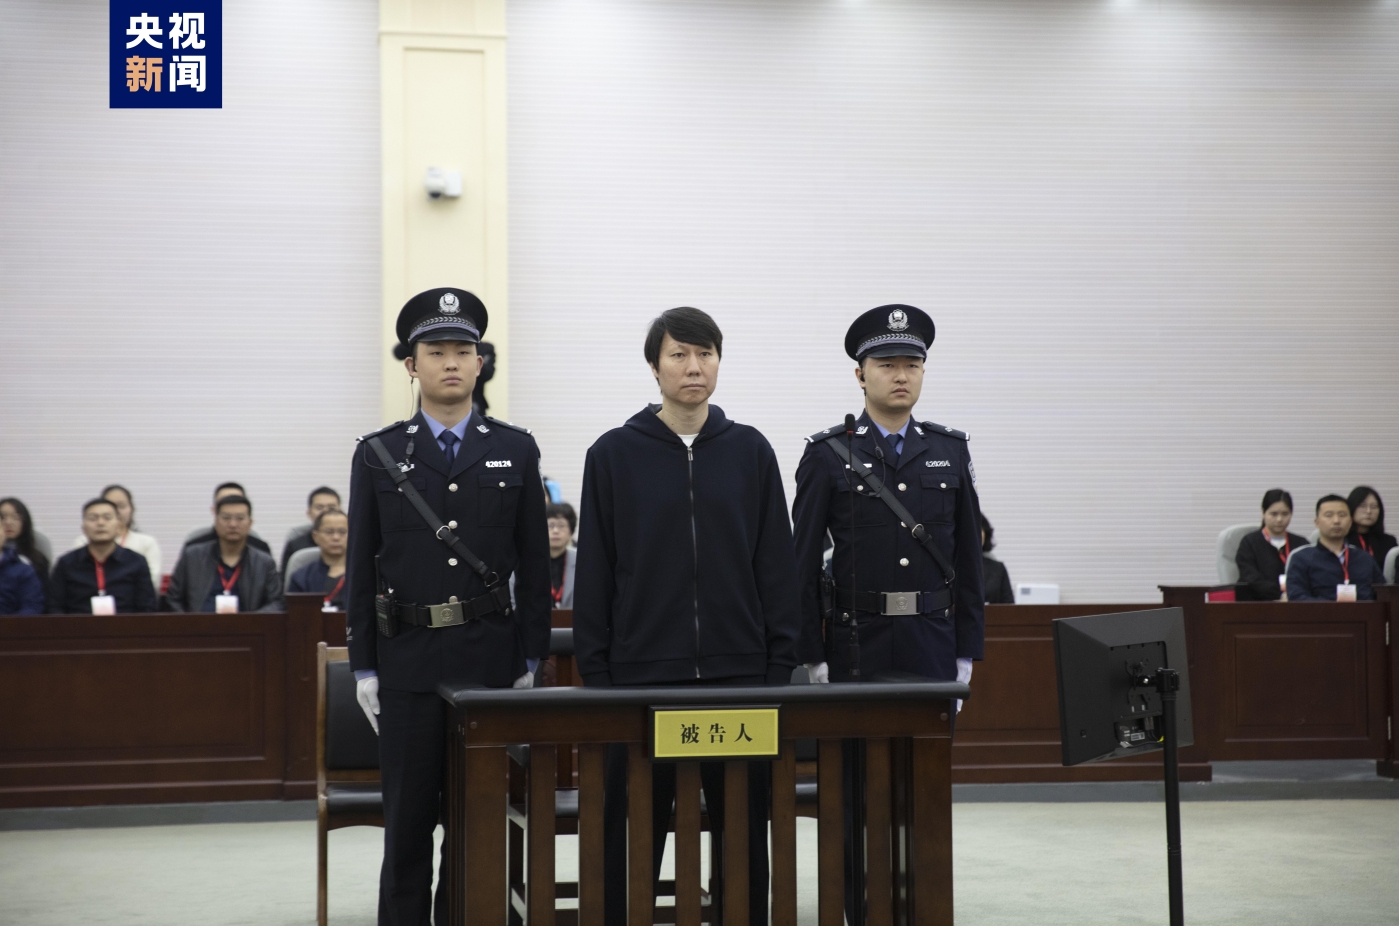 李铁今日在法庭上认罪悔罪照，仍留着标志性刘海！